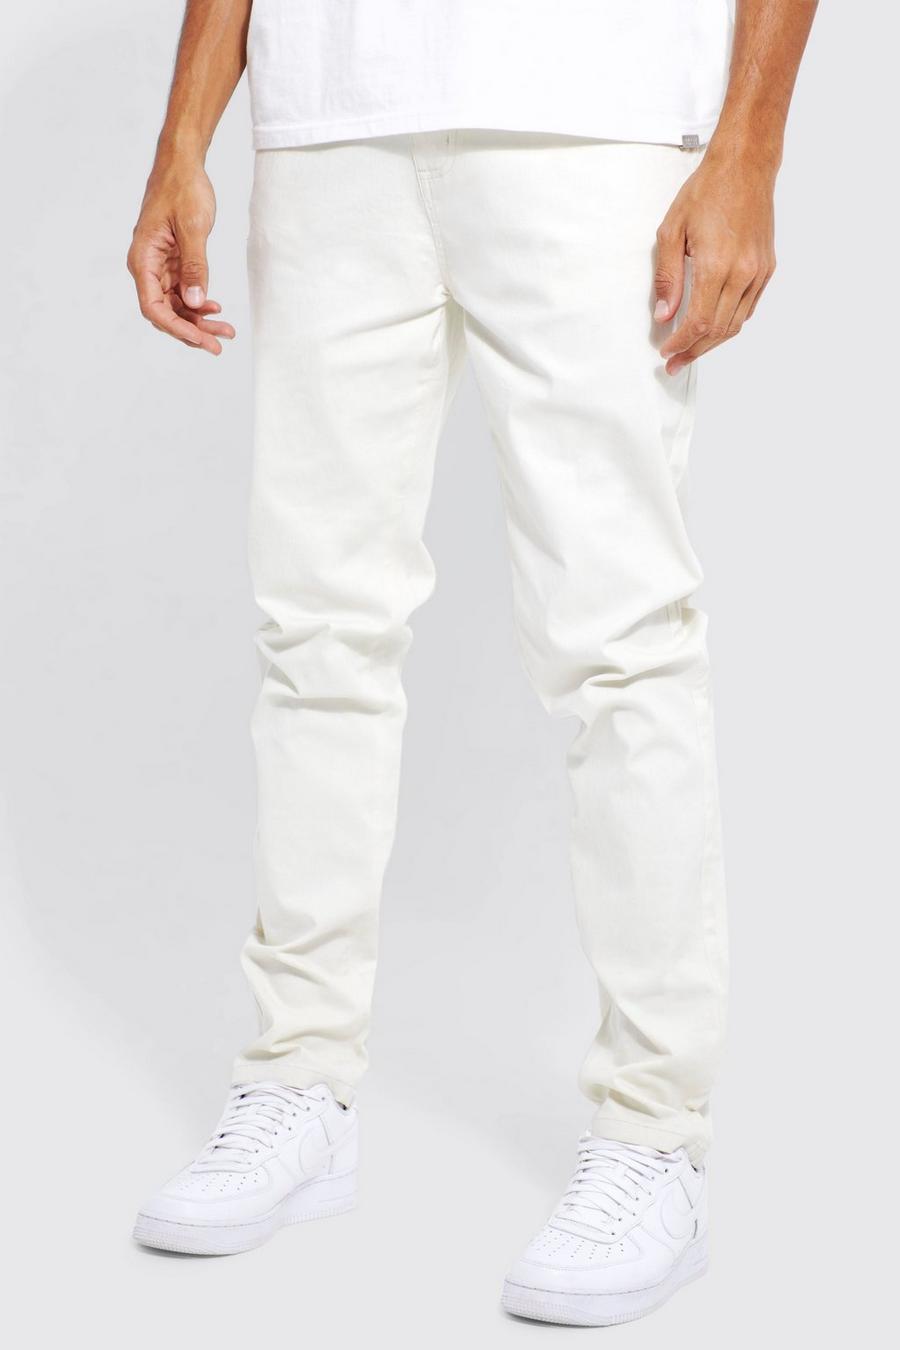 Pantalón Tall chino elástico con cintura fija y cintura ajustada, Ecru blanco